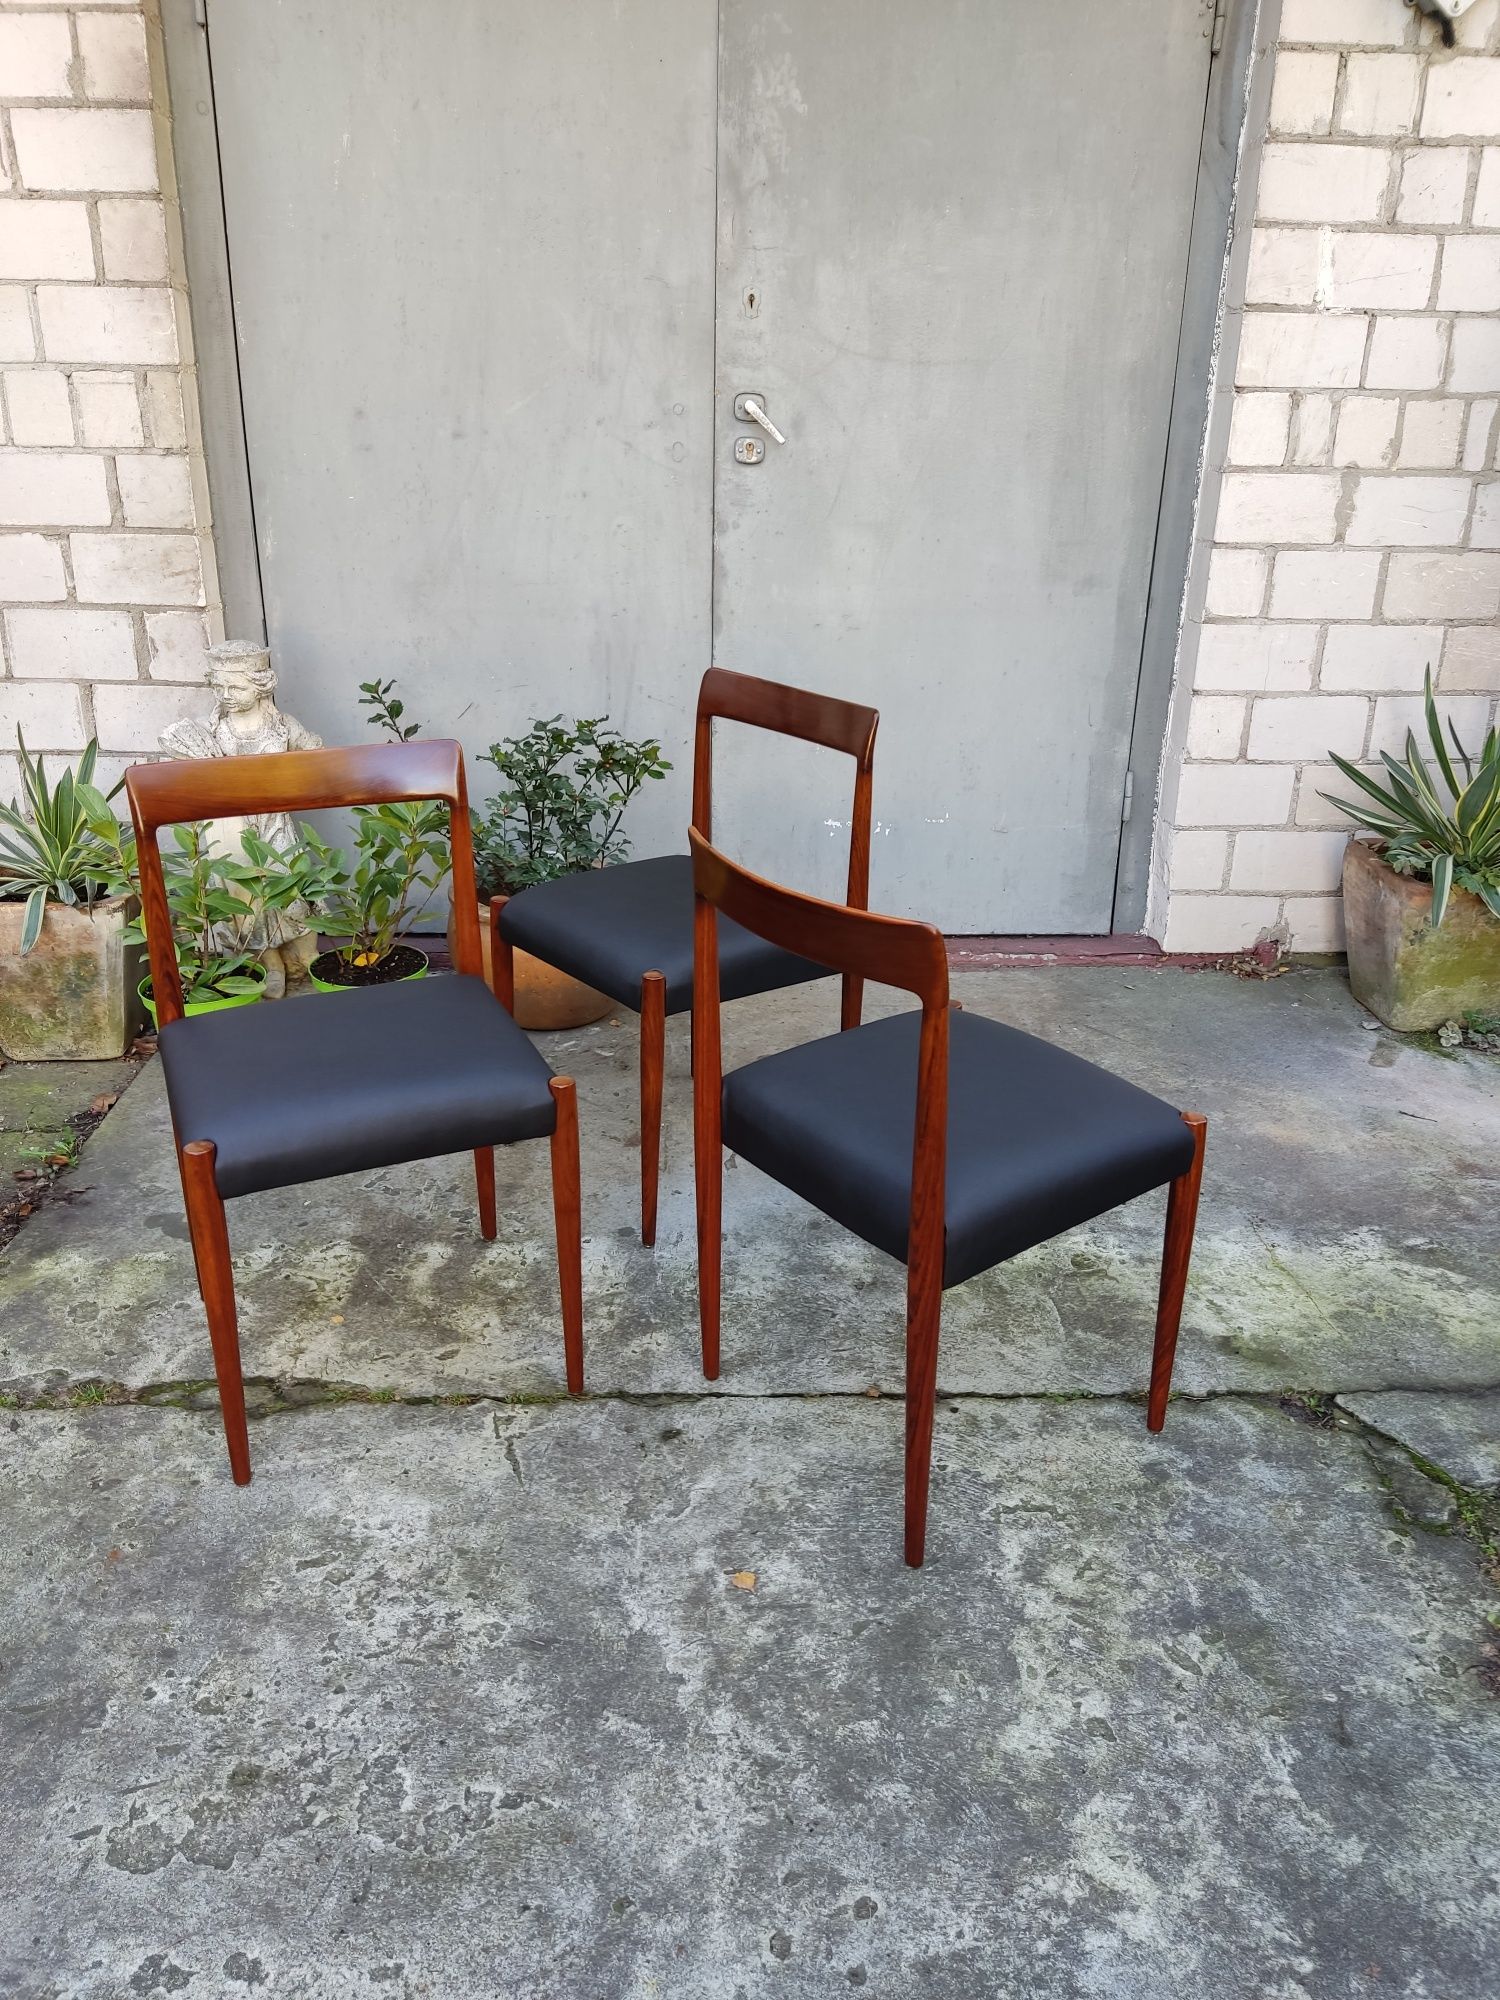 Zestaw trzech krzeseł tekowych Lübke lata 60 te Niemcy vintage design